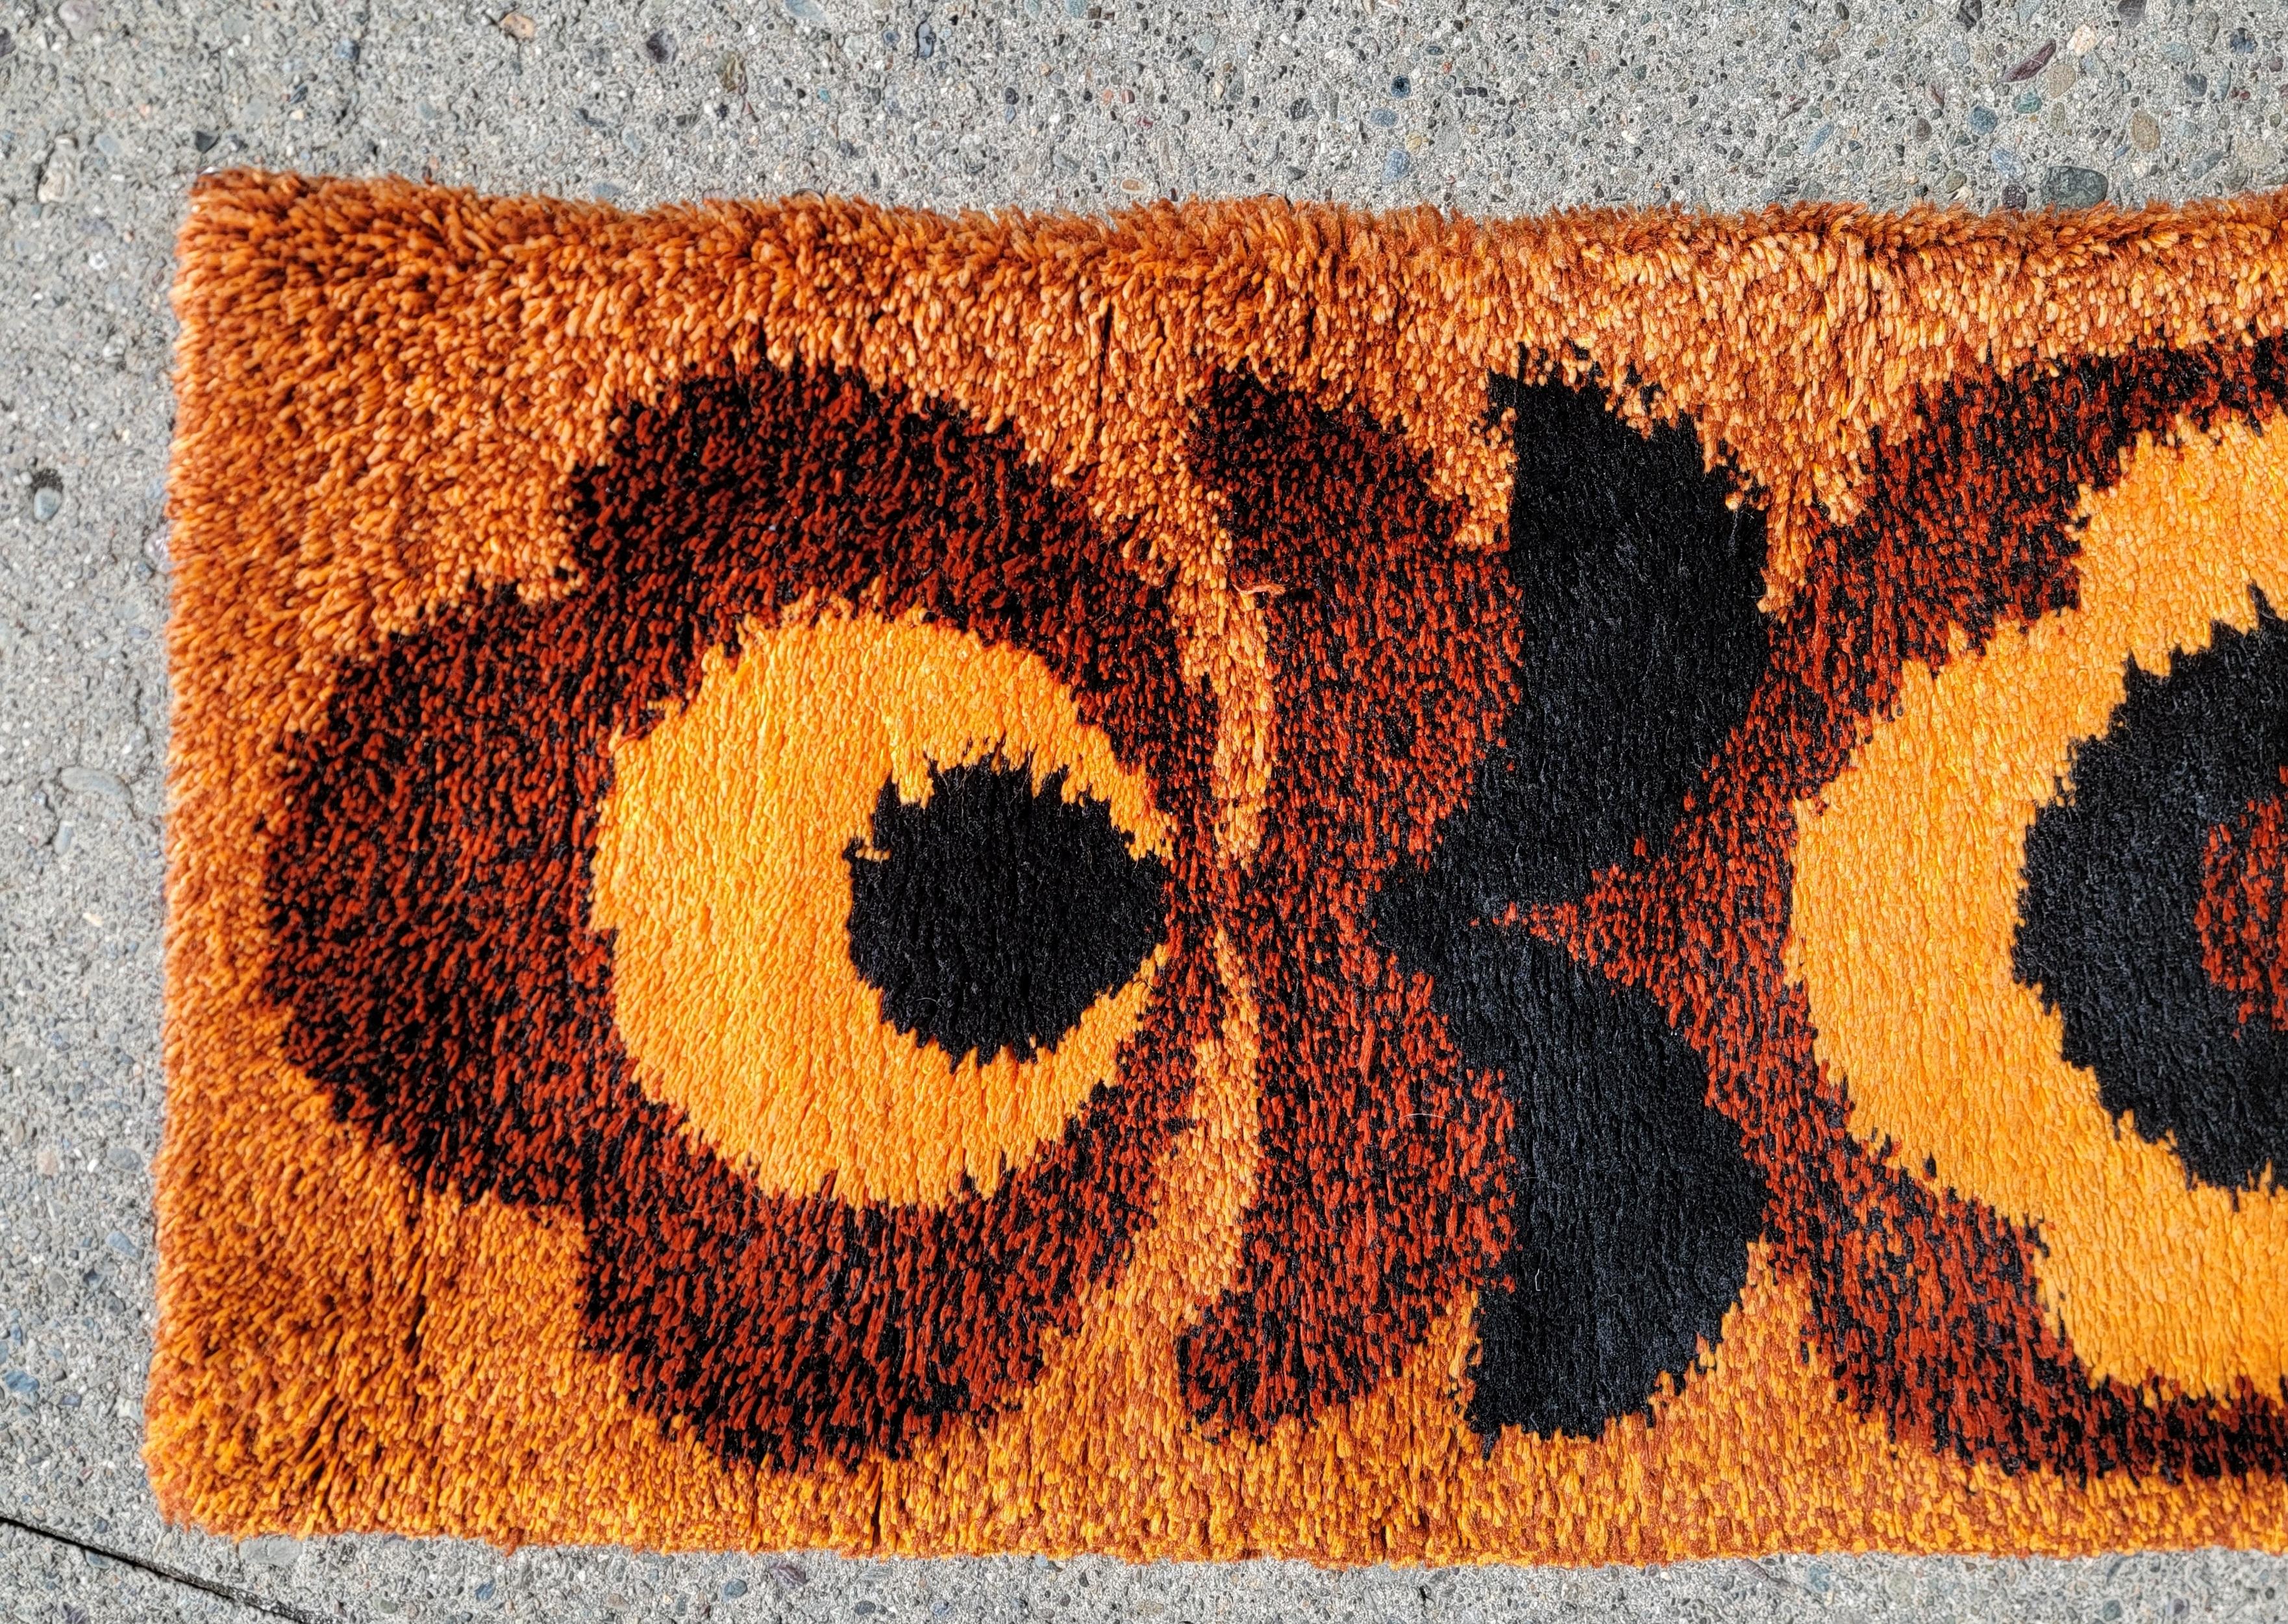 Ein dänischer Shag- oder Rya-Teppich, circa. 1970's. Tiefe, satte Schattierungen von gebranntem Orange mit schwarzem Akzent. An einer Seite sind kleine Messingkreise angebracht, da dieser Teppich früher als Wanddekoration aufgehängt wurde. Daher